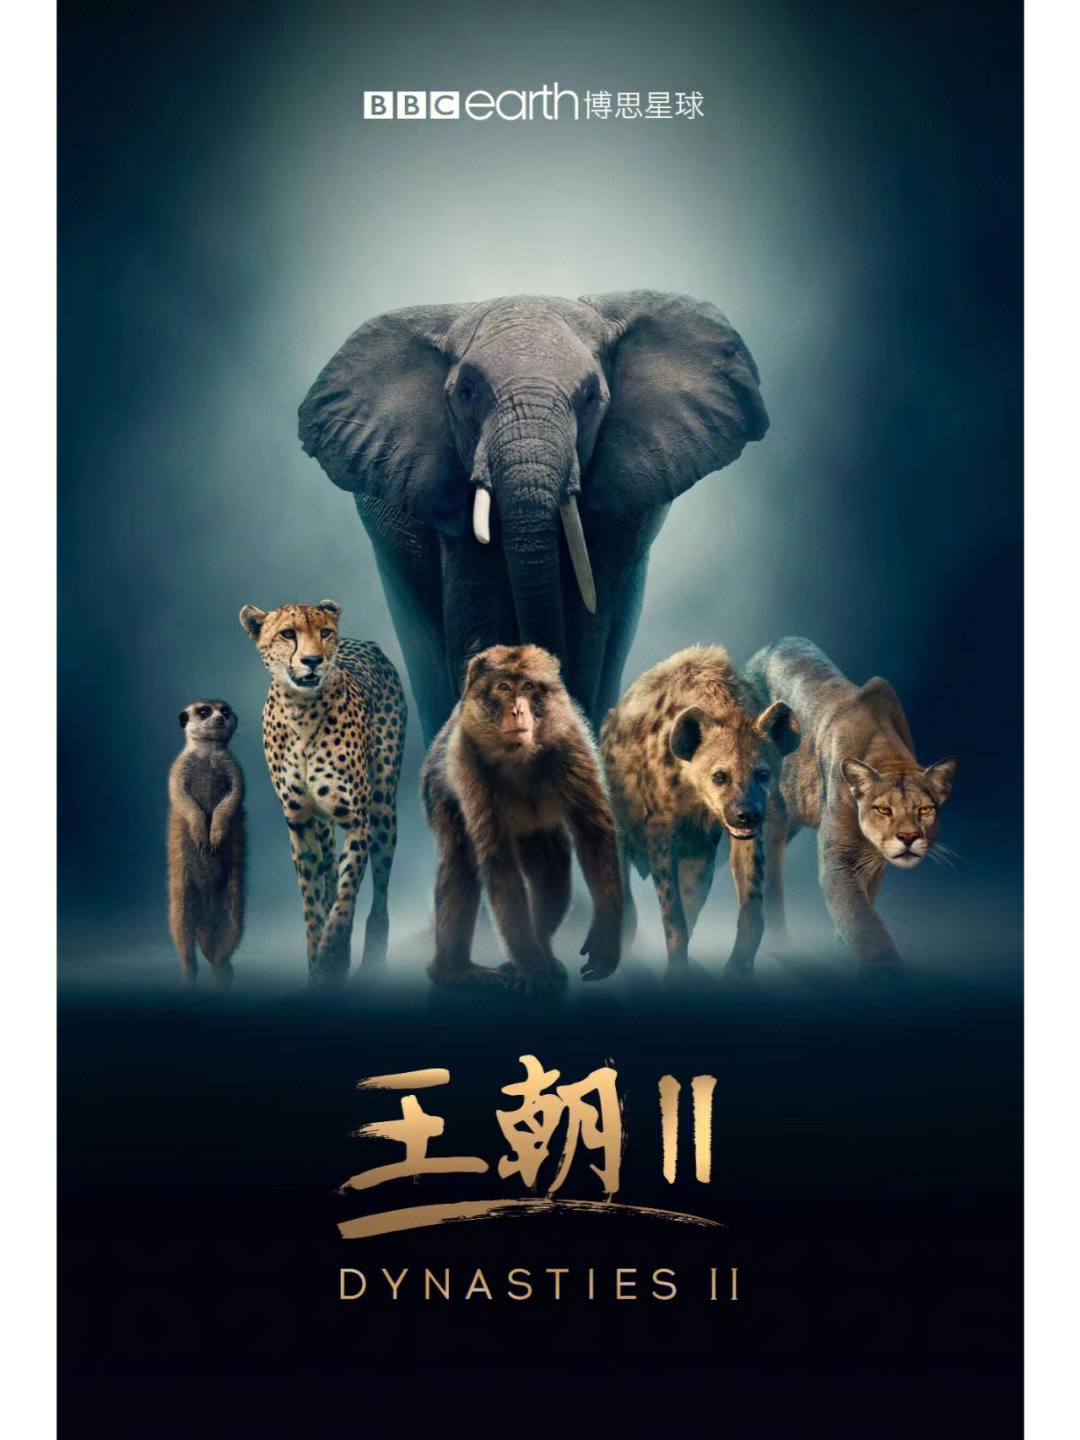 《王朝ii》将聚焦五大标志性族群:美洲狮,非洲象,猎豹,斑鬣狗以及狐獴